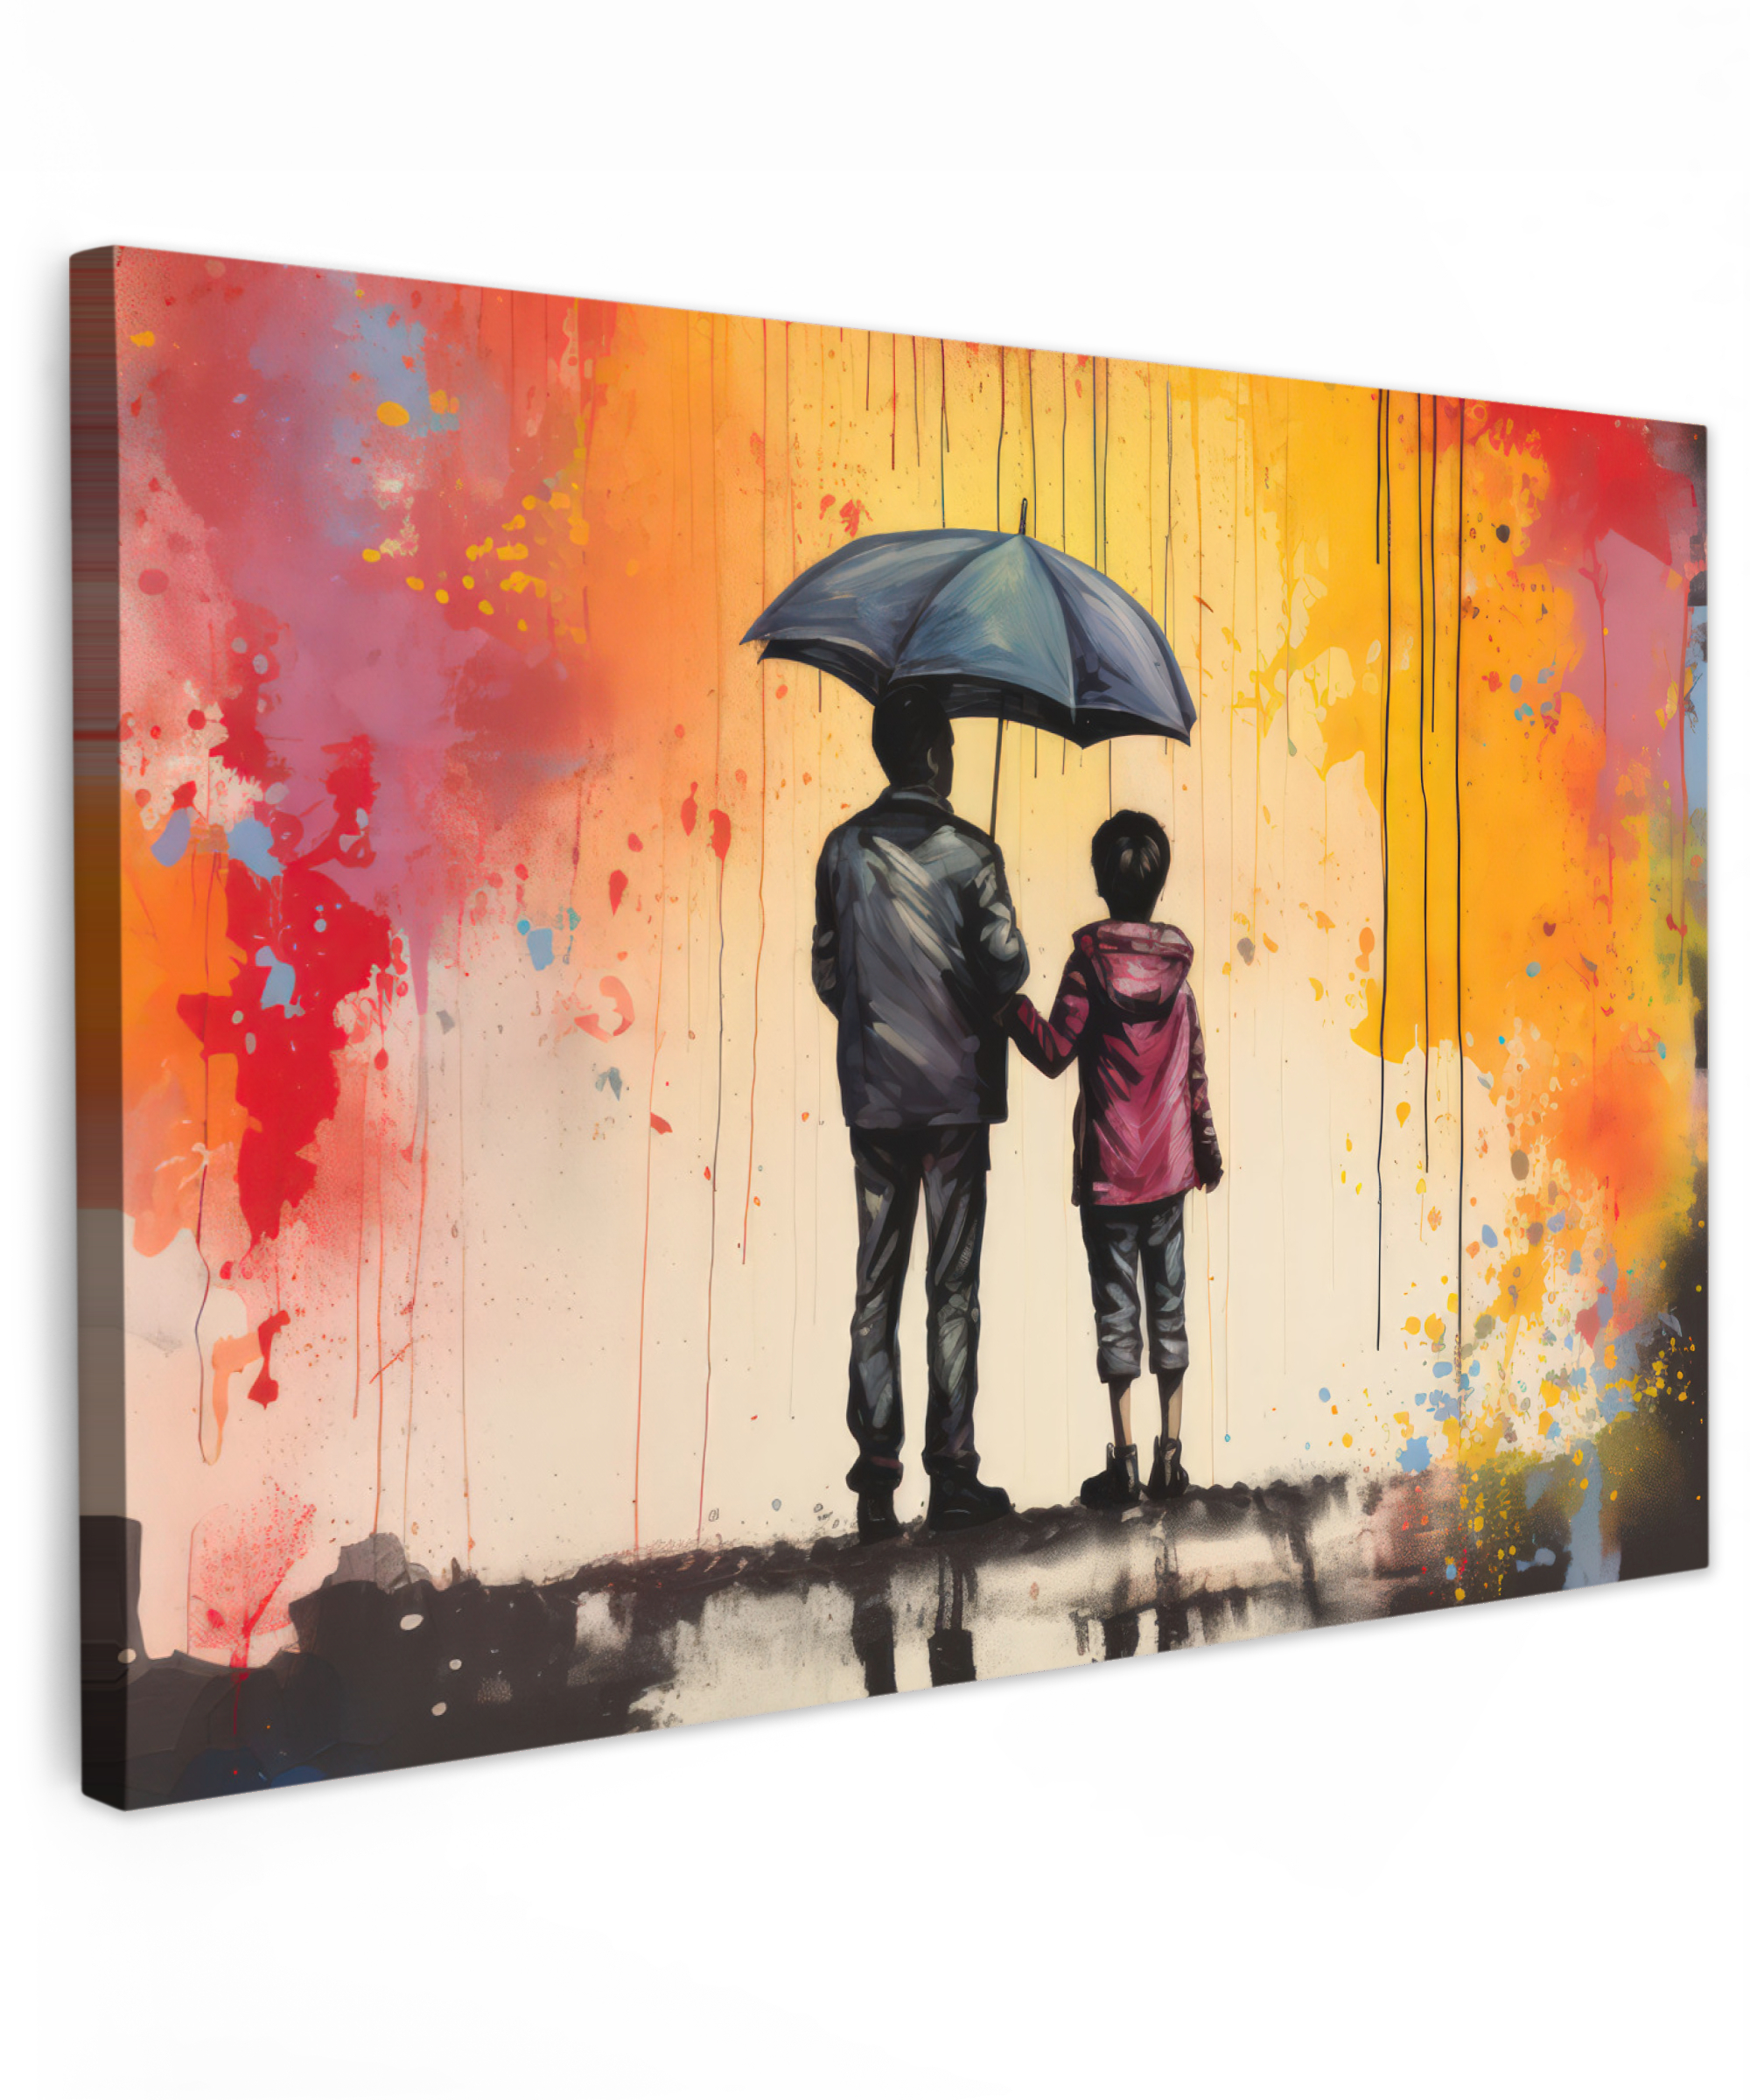 Tableau sur toile - Graffiti - Parapluie - Gens - Couleurs - Art